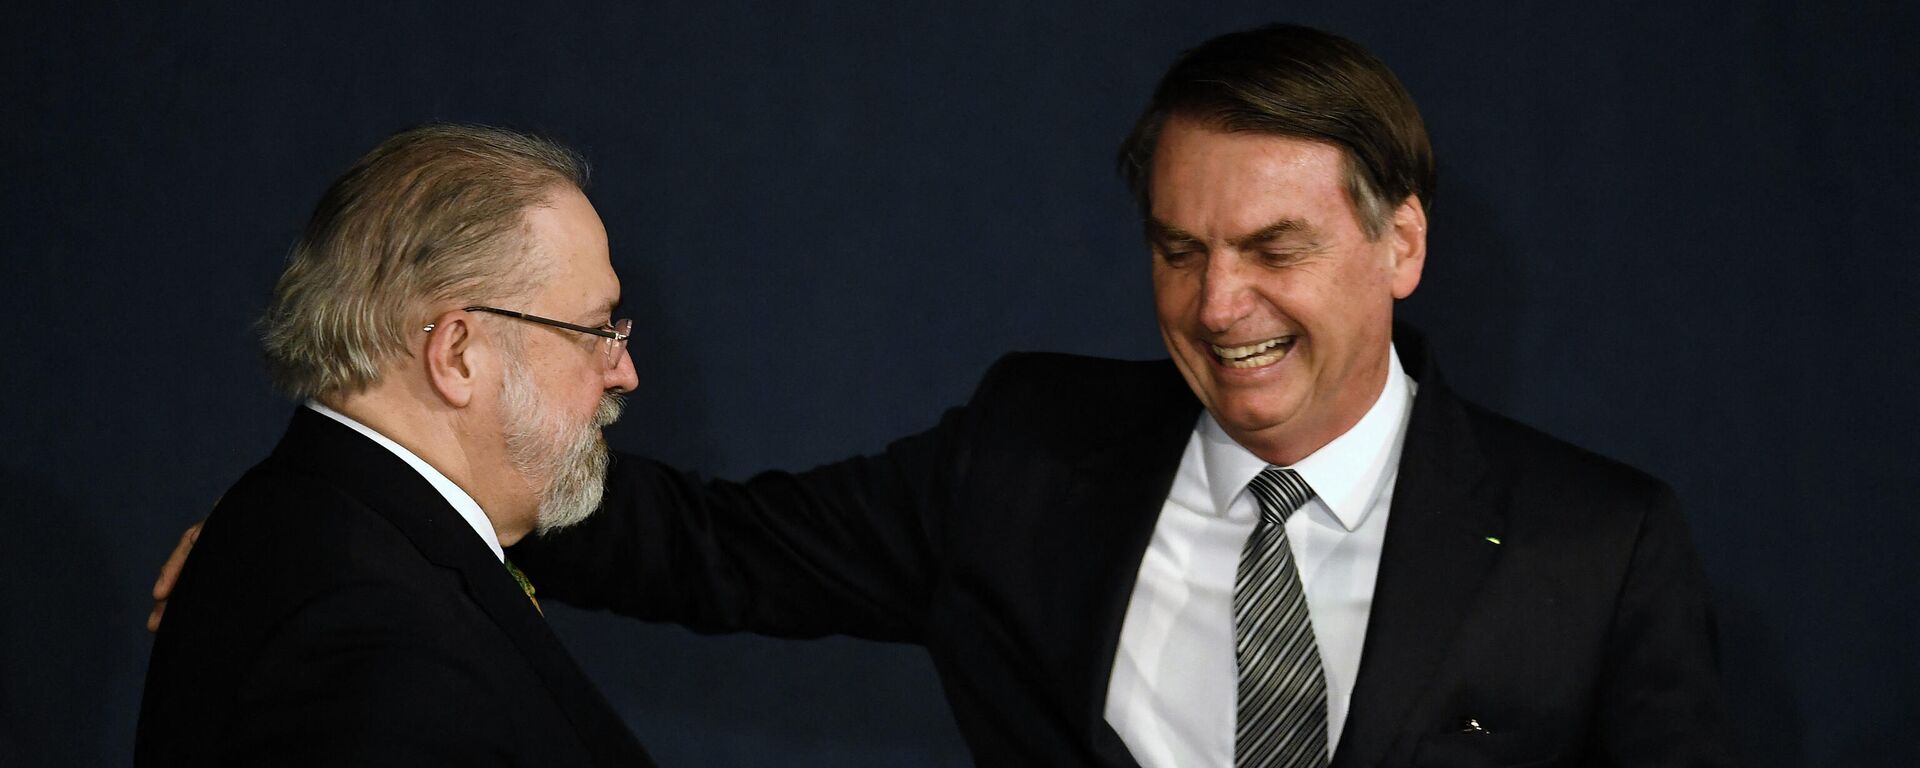 El procurador general de Brasil, Augusto Aras, junto al presidente brasileño Jair Bolsonaro - Sputnik Mundo, 1920, 20.07.2021